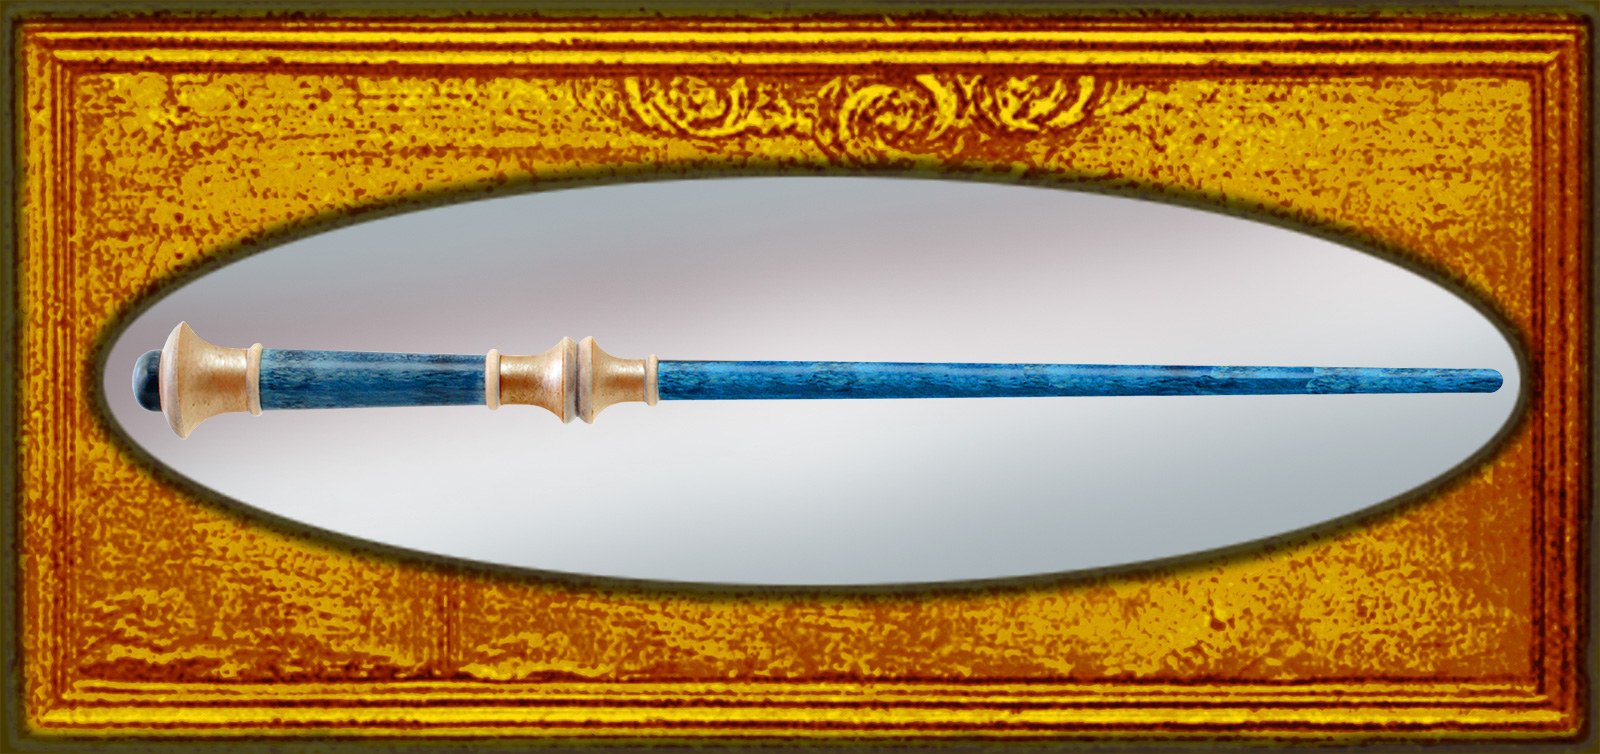 hidden chamber gold badger magic wand